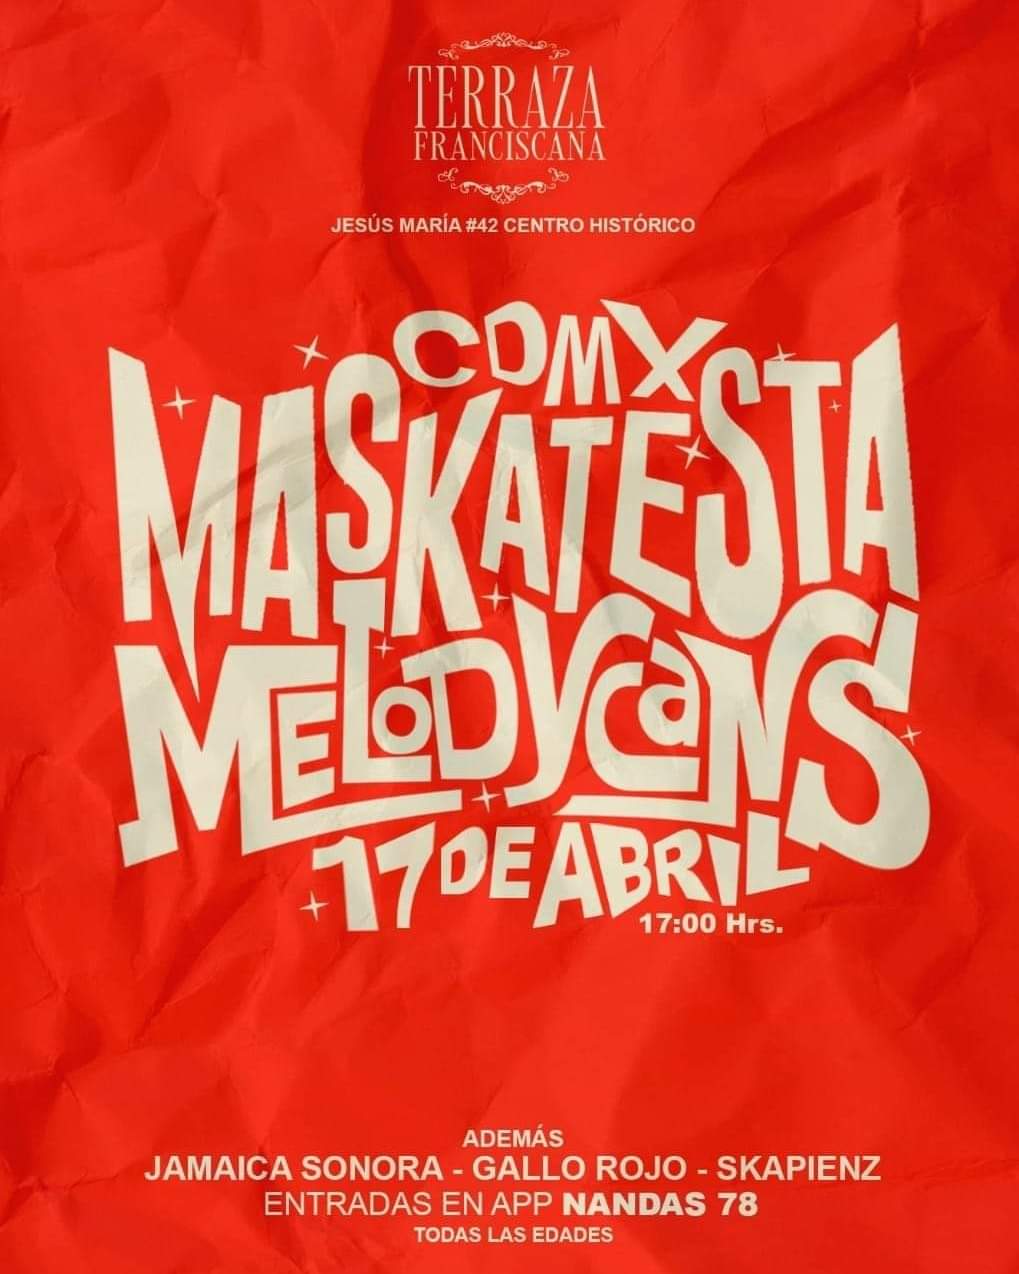 Denuncian agresiones y disparos en concierto de Maskatesta en la CDMX